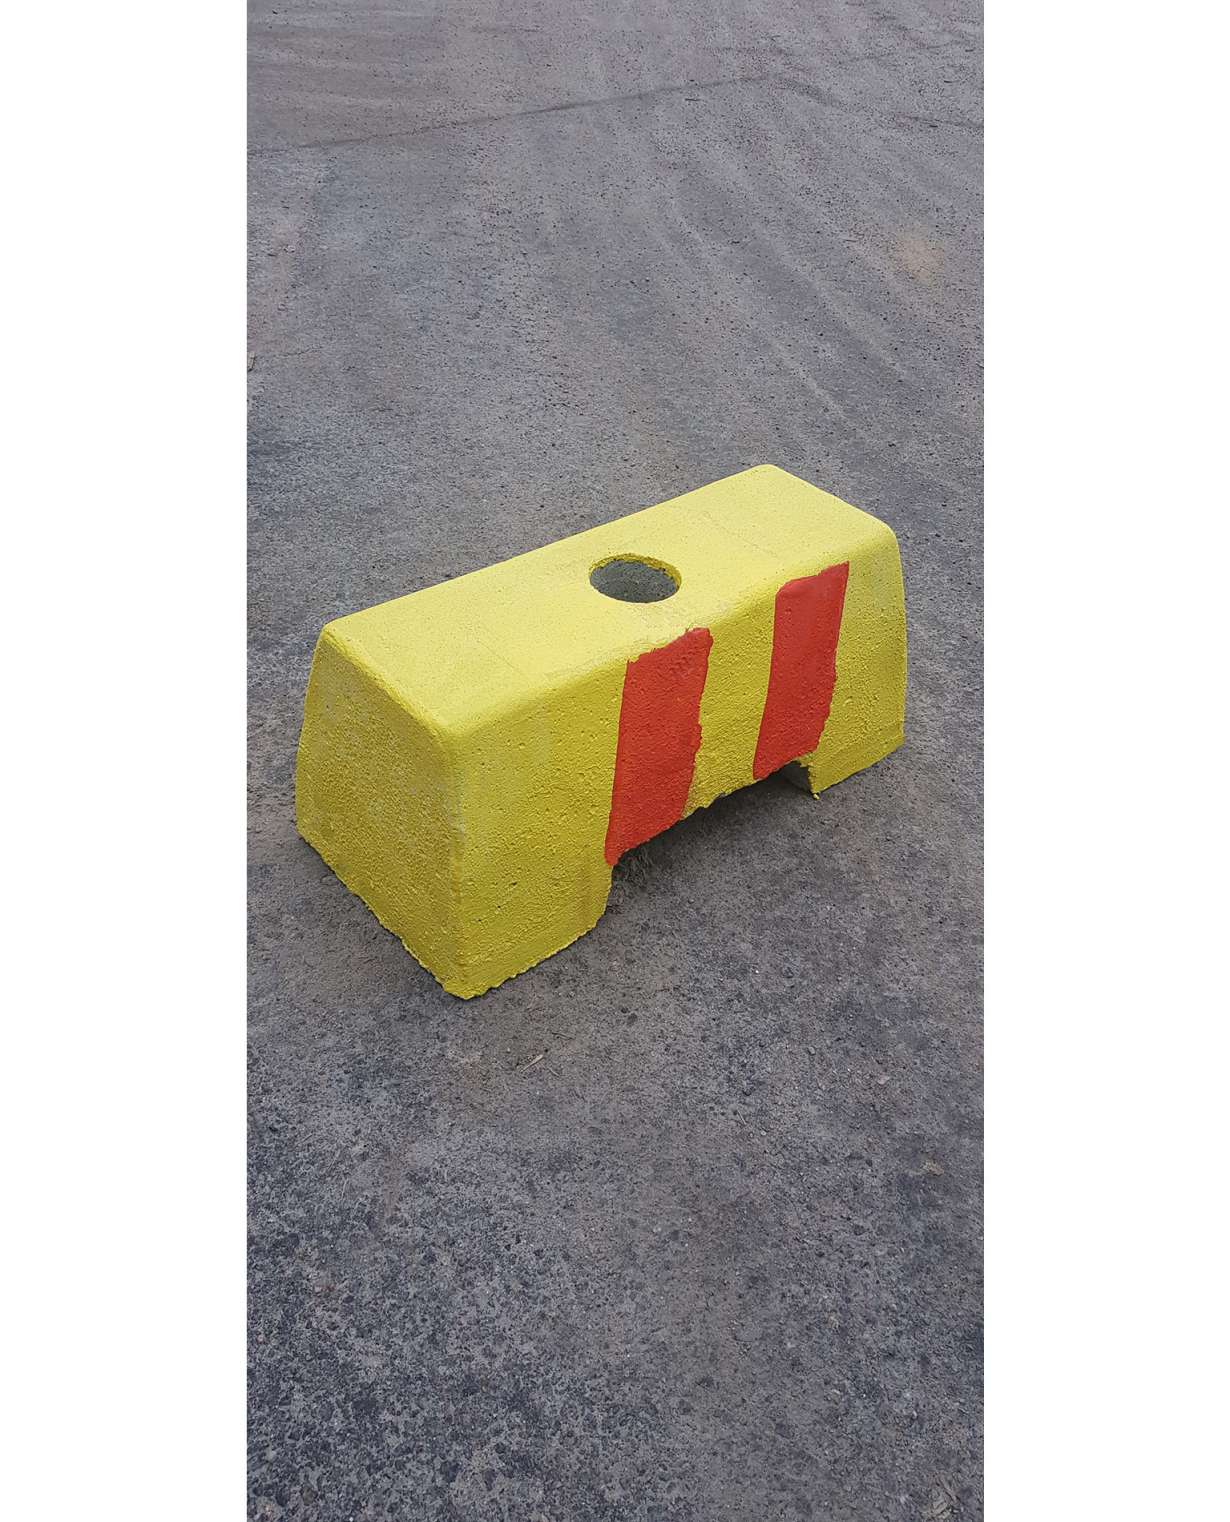 Betoniporsas mini 60kg (Punainen/Keltainen)